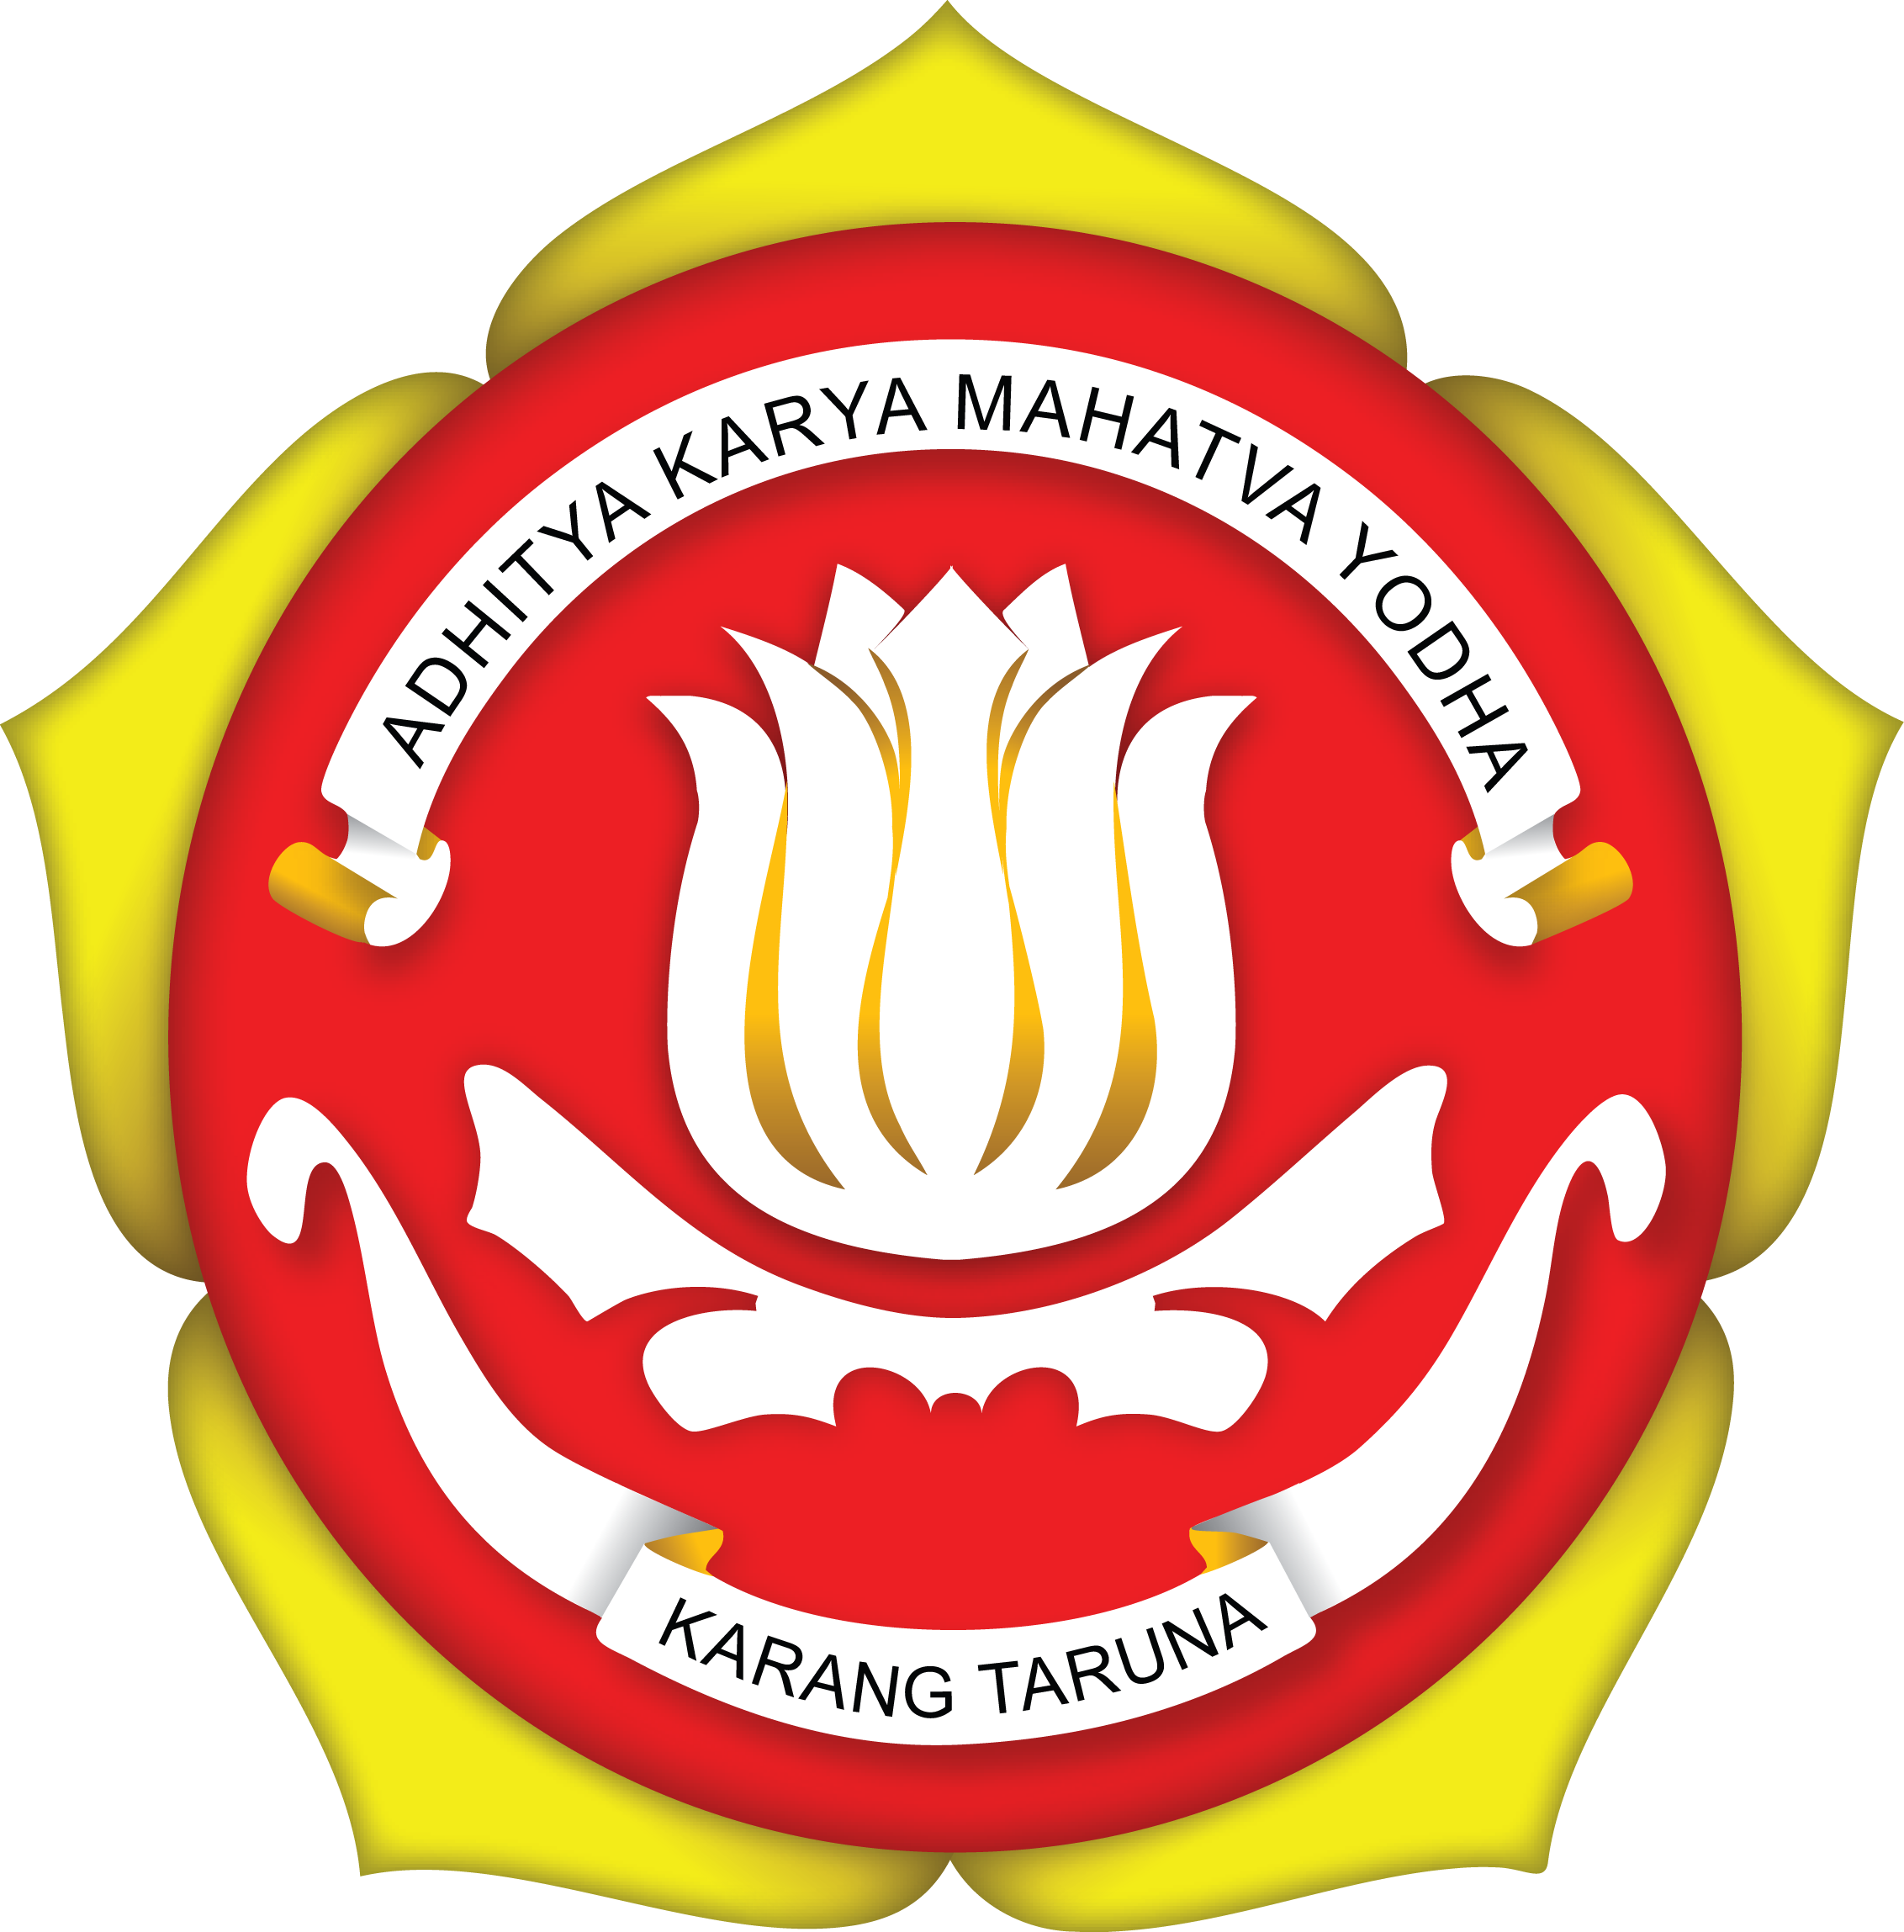 karang taruna logo transparent 31377